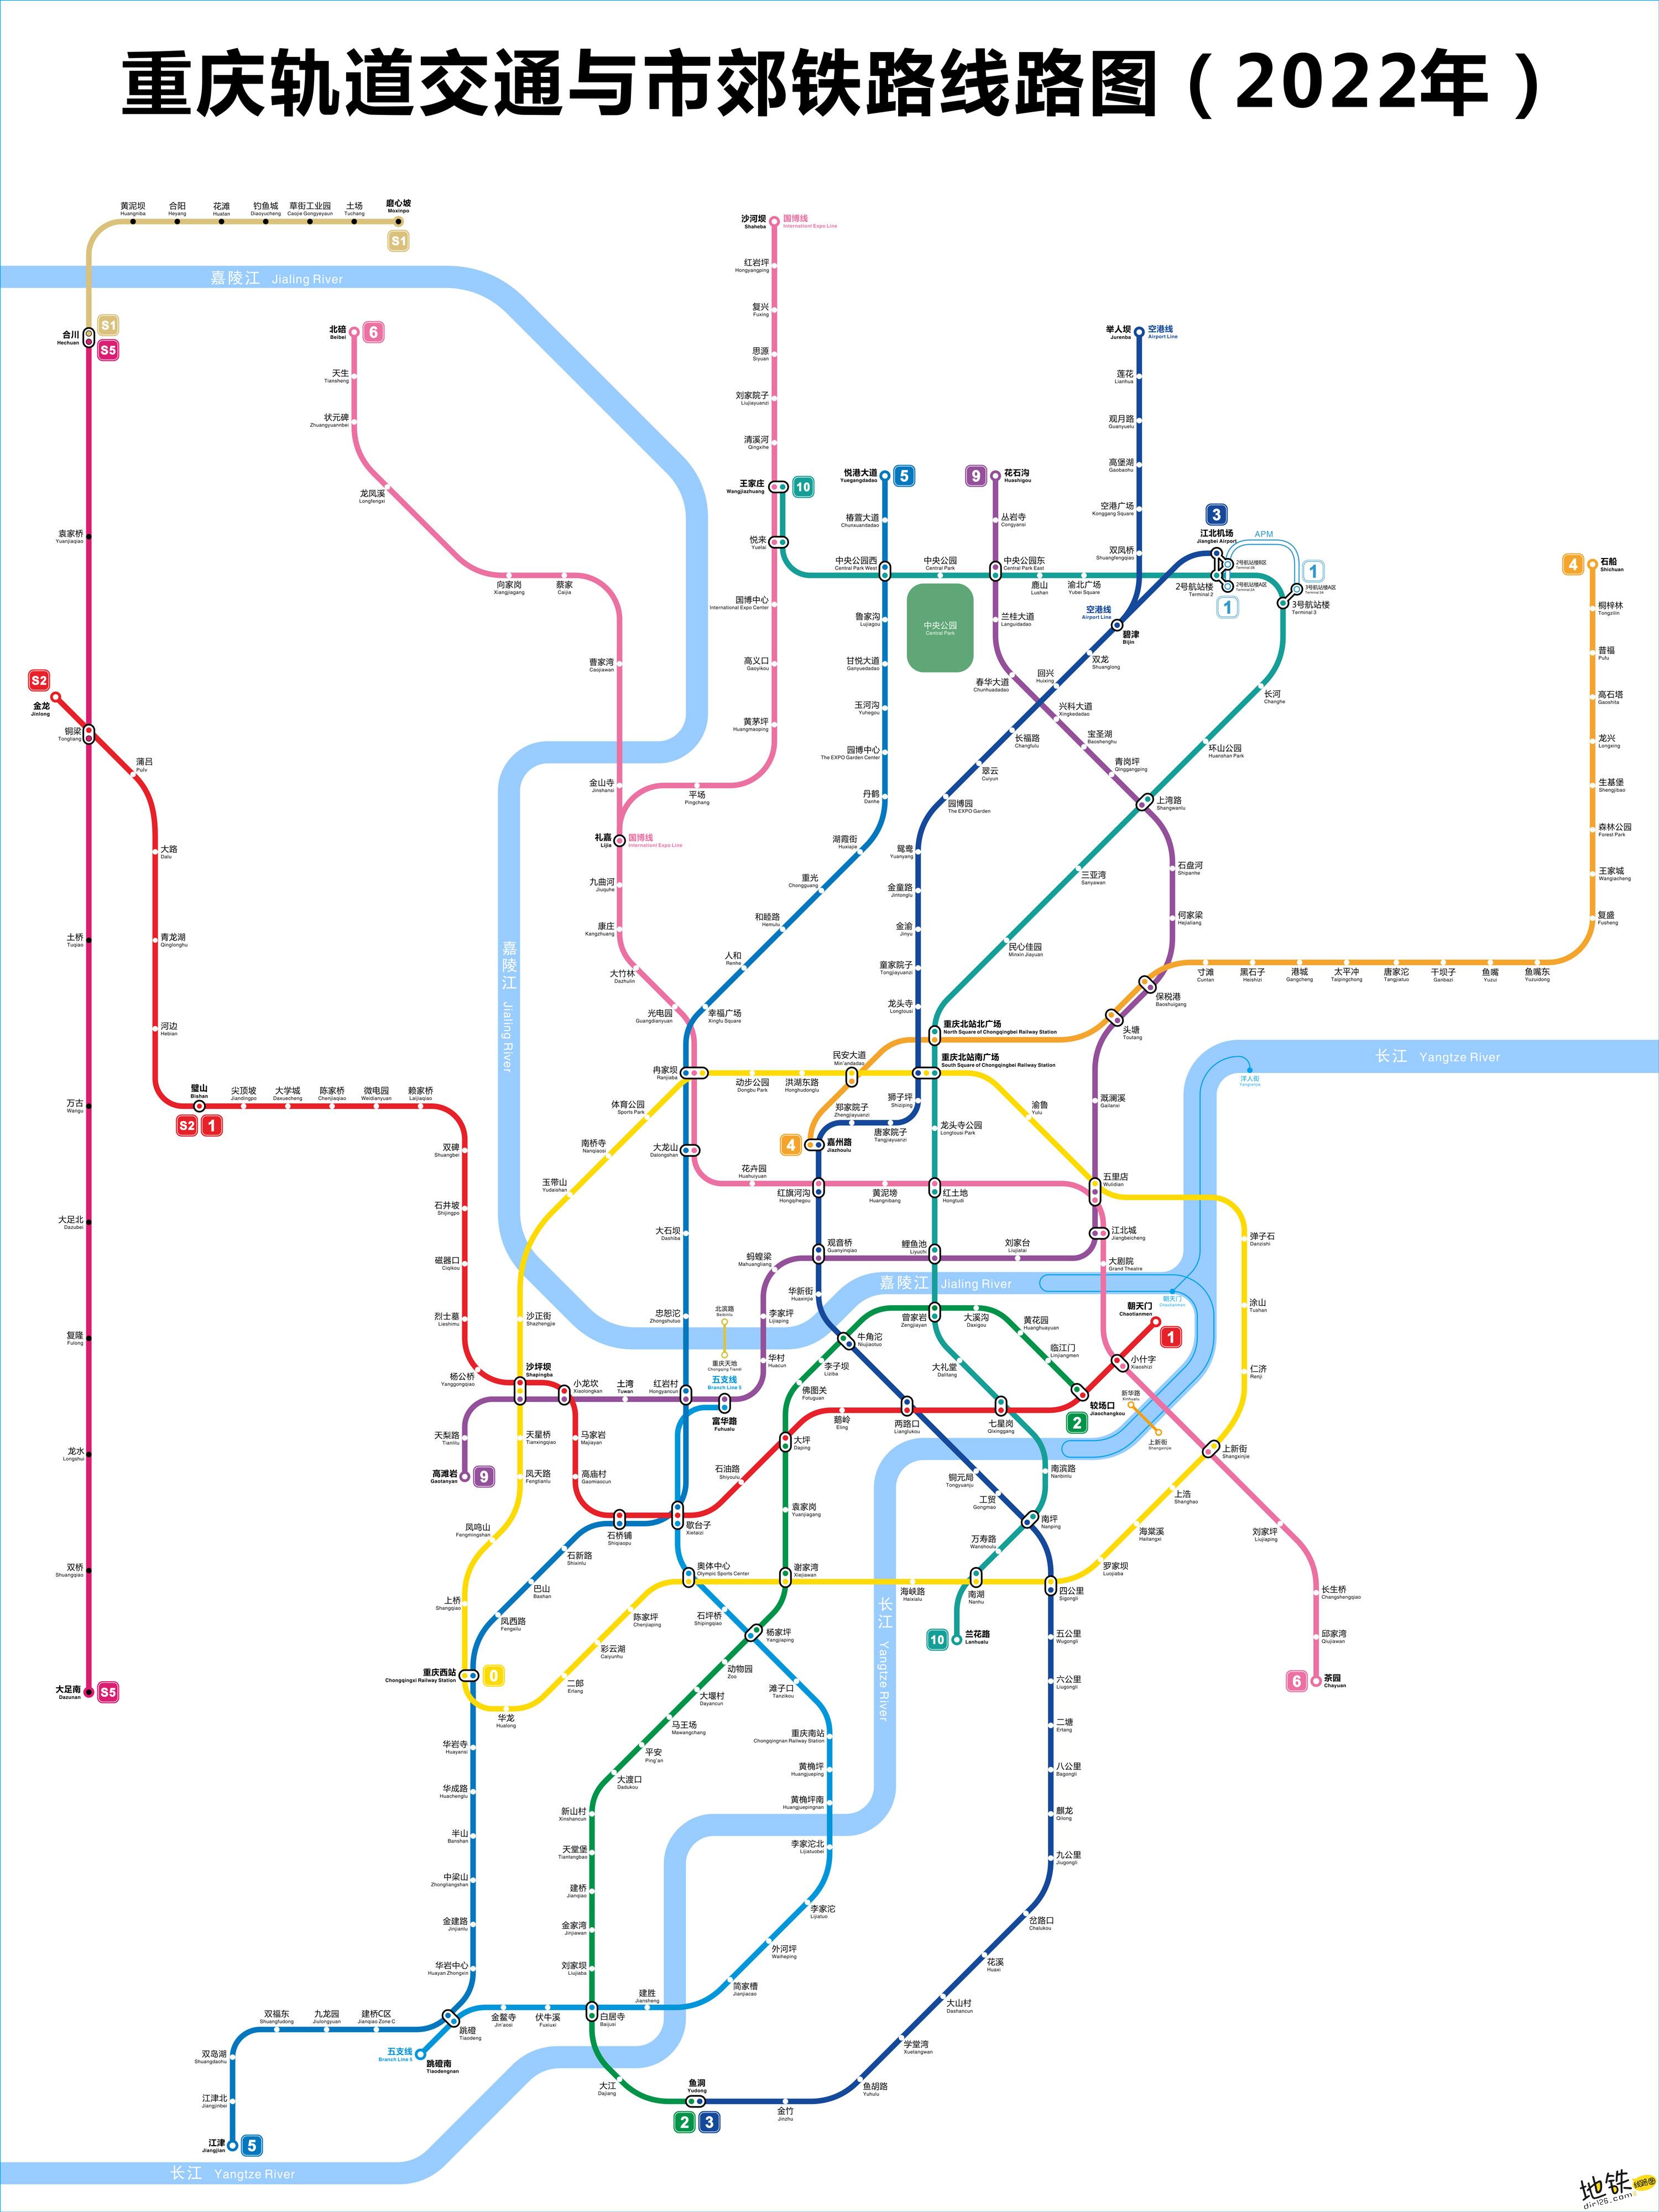 (注:点击图片可查看下载大图) ※线网规划图终以重庆轨道交通建设实际